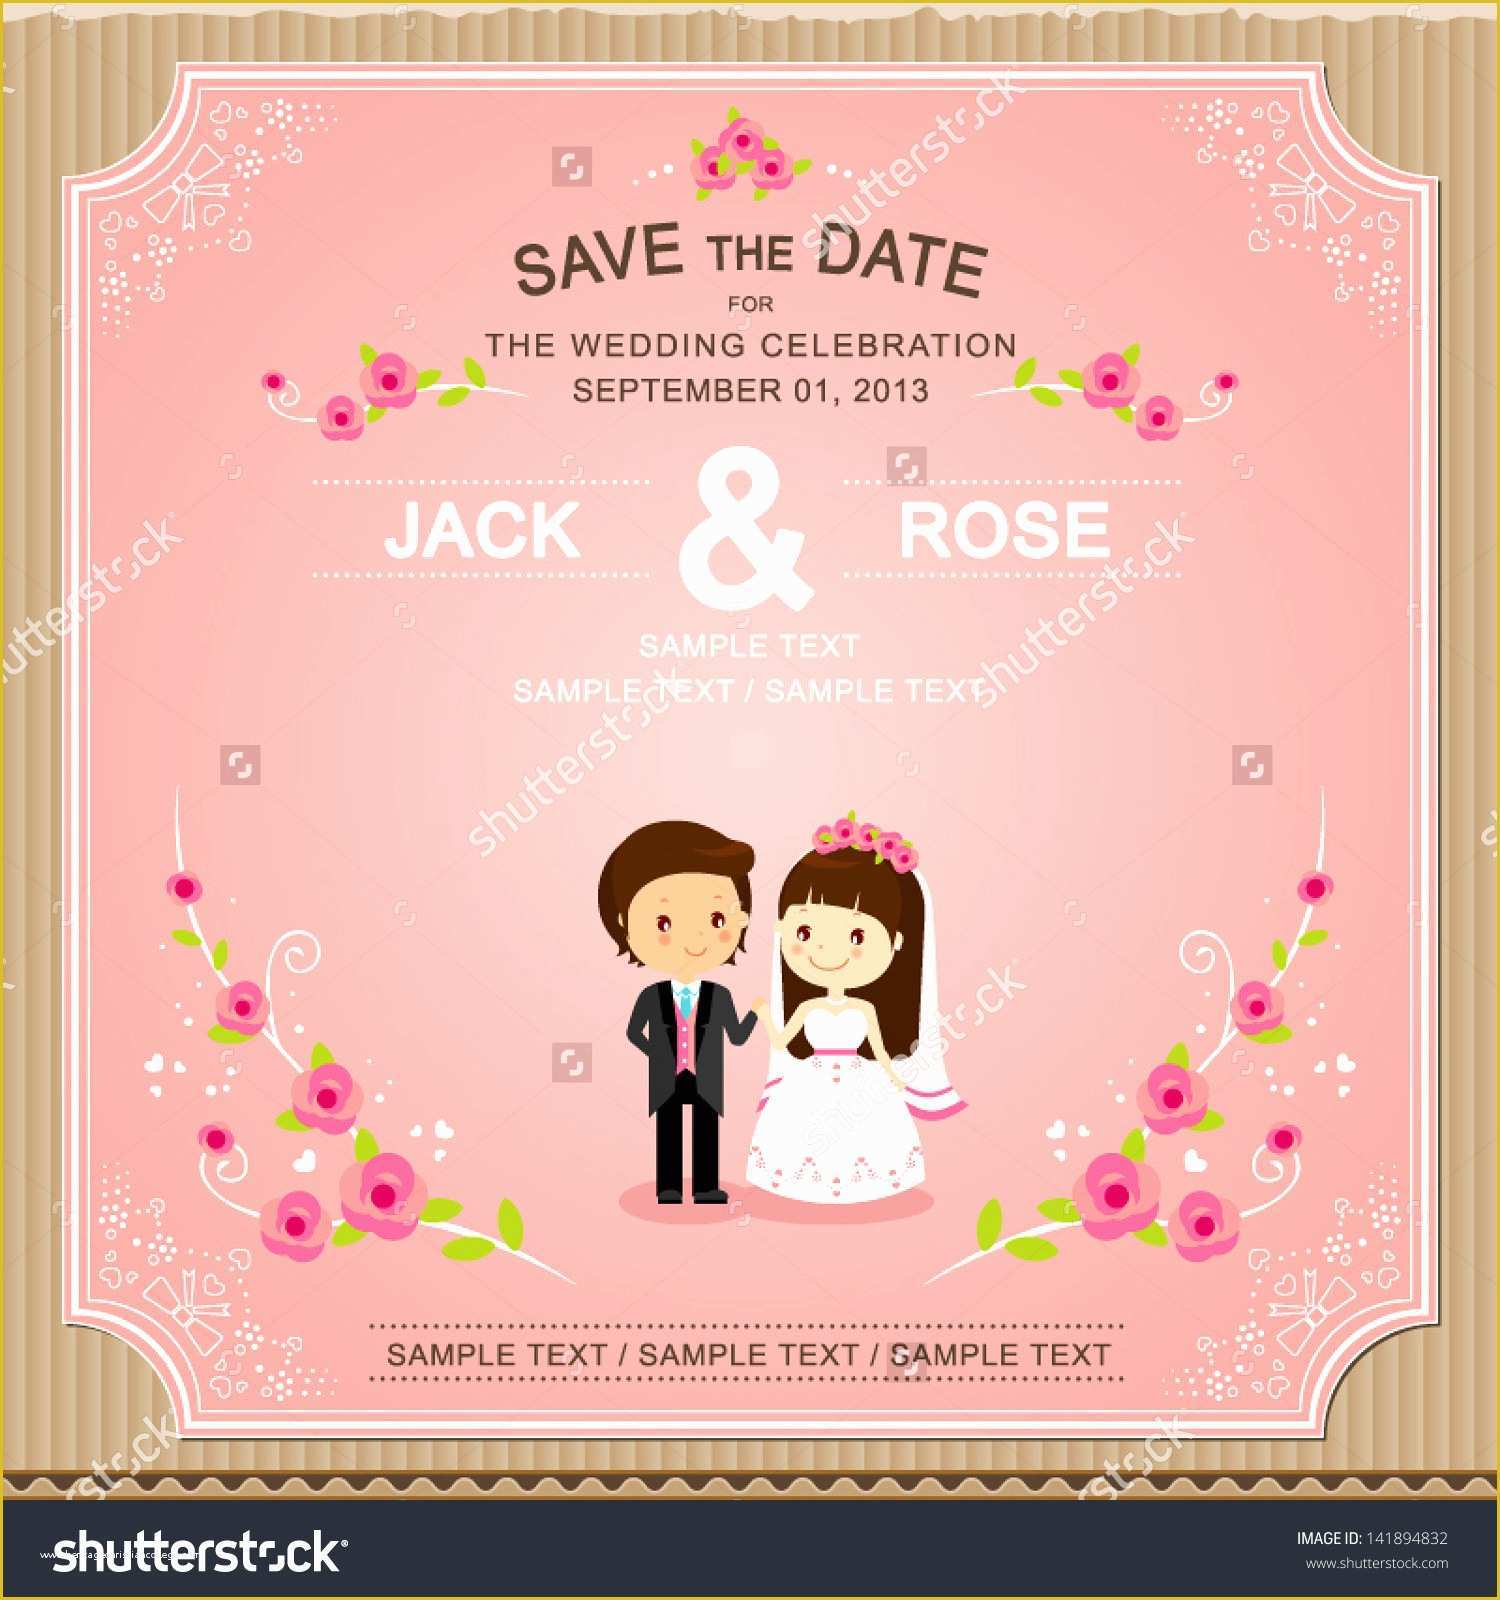 Editable Wedding Invitation Templates Free Download Of Editable Indian Wedding Invitation Templates Free Download